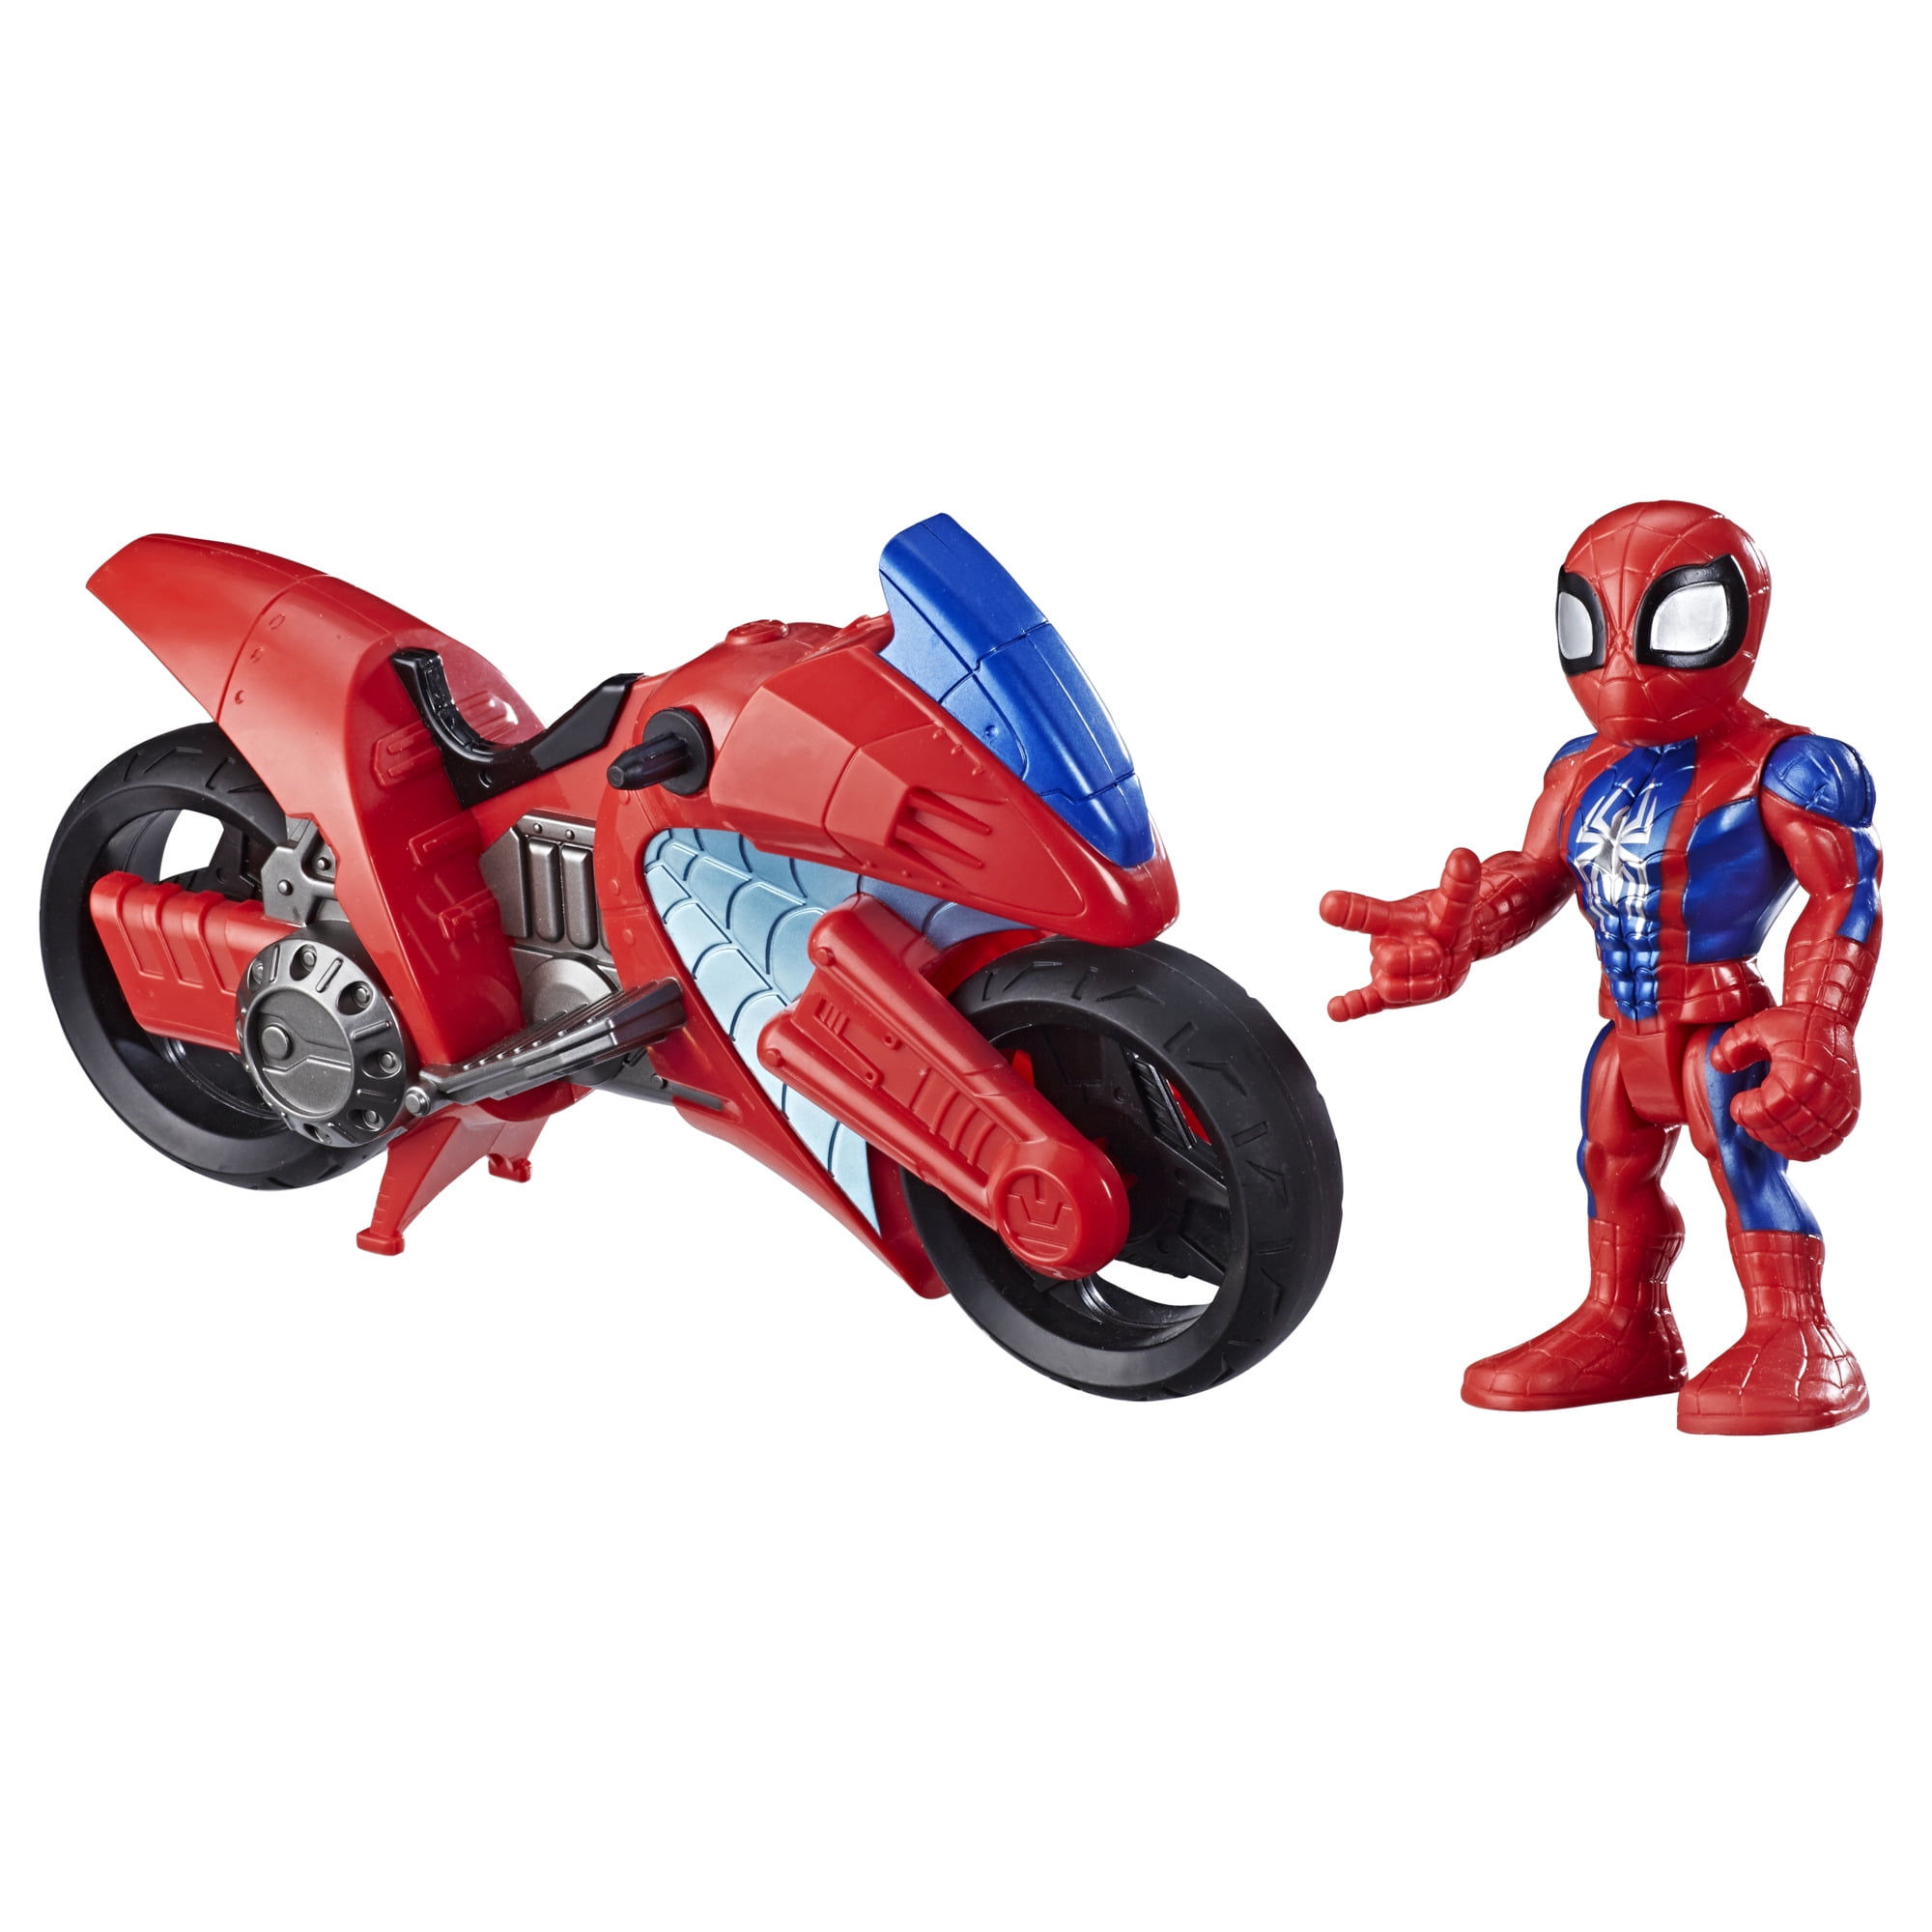 Playskool Marvel Super Hero Adventures Spider-Man Launcher Motorcycle Racer 2 